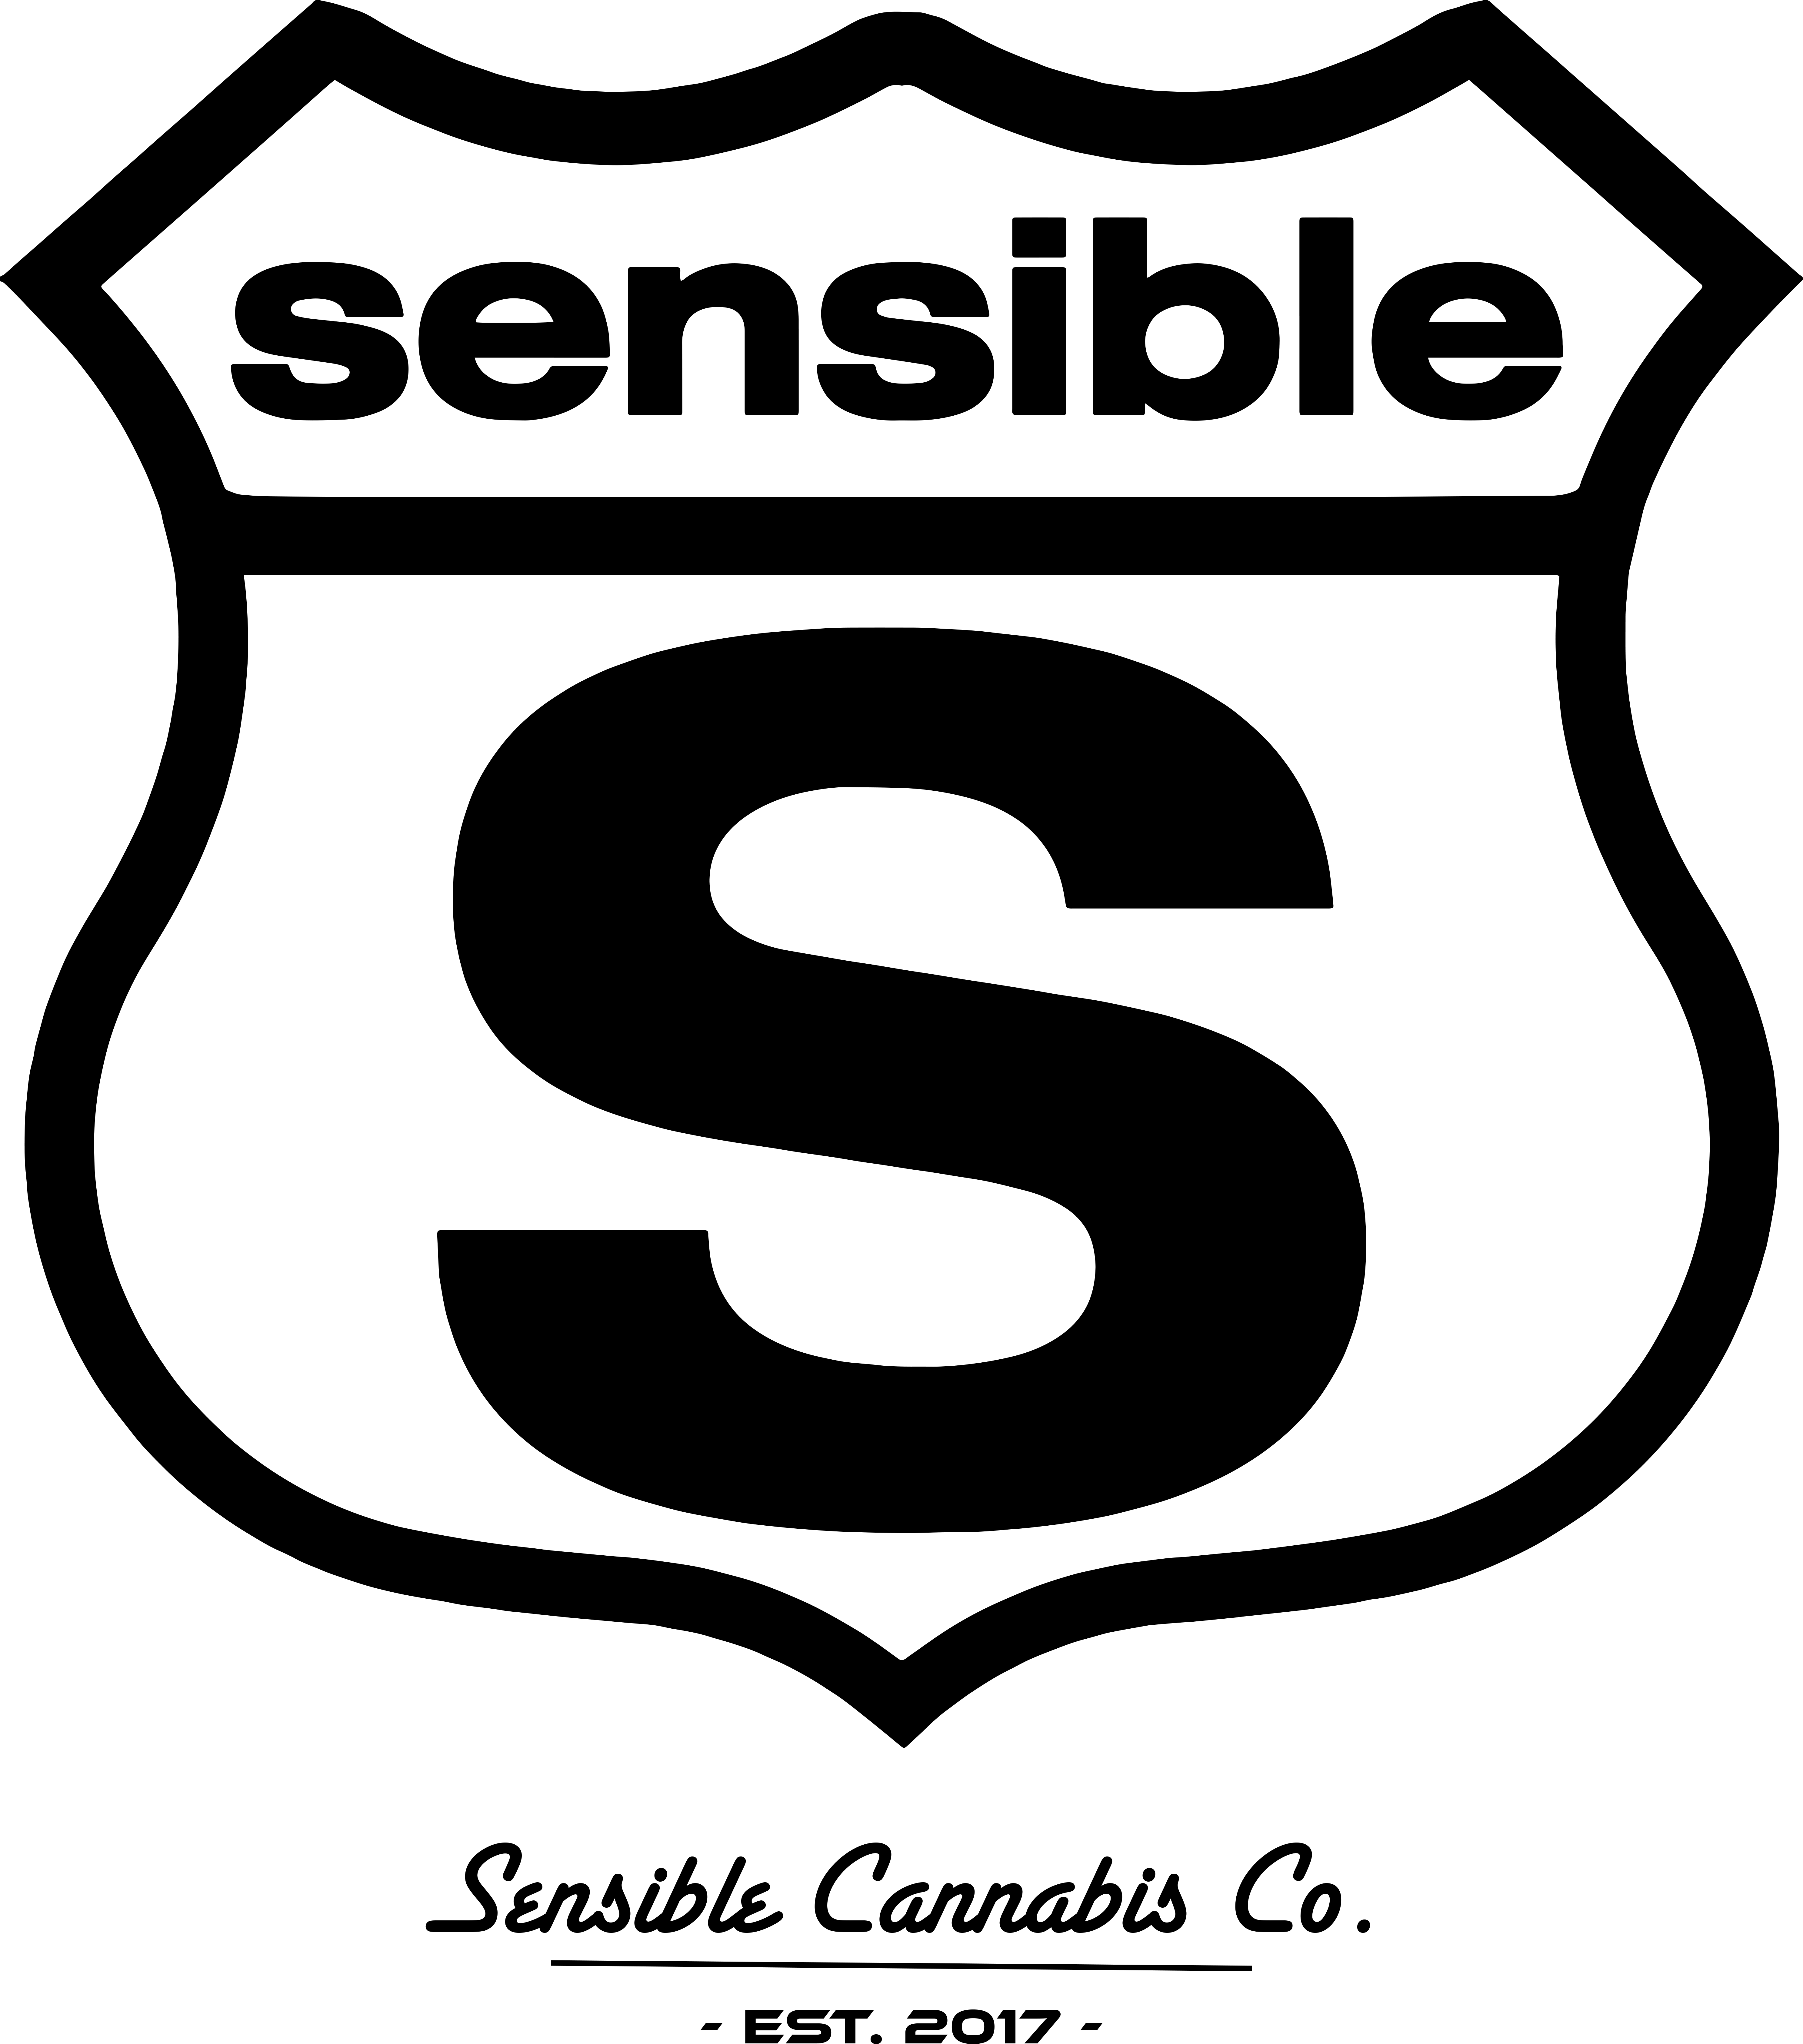 Sensible Cannabis Company - Medical Marijuana Doctors - Cannabizme.com